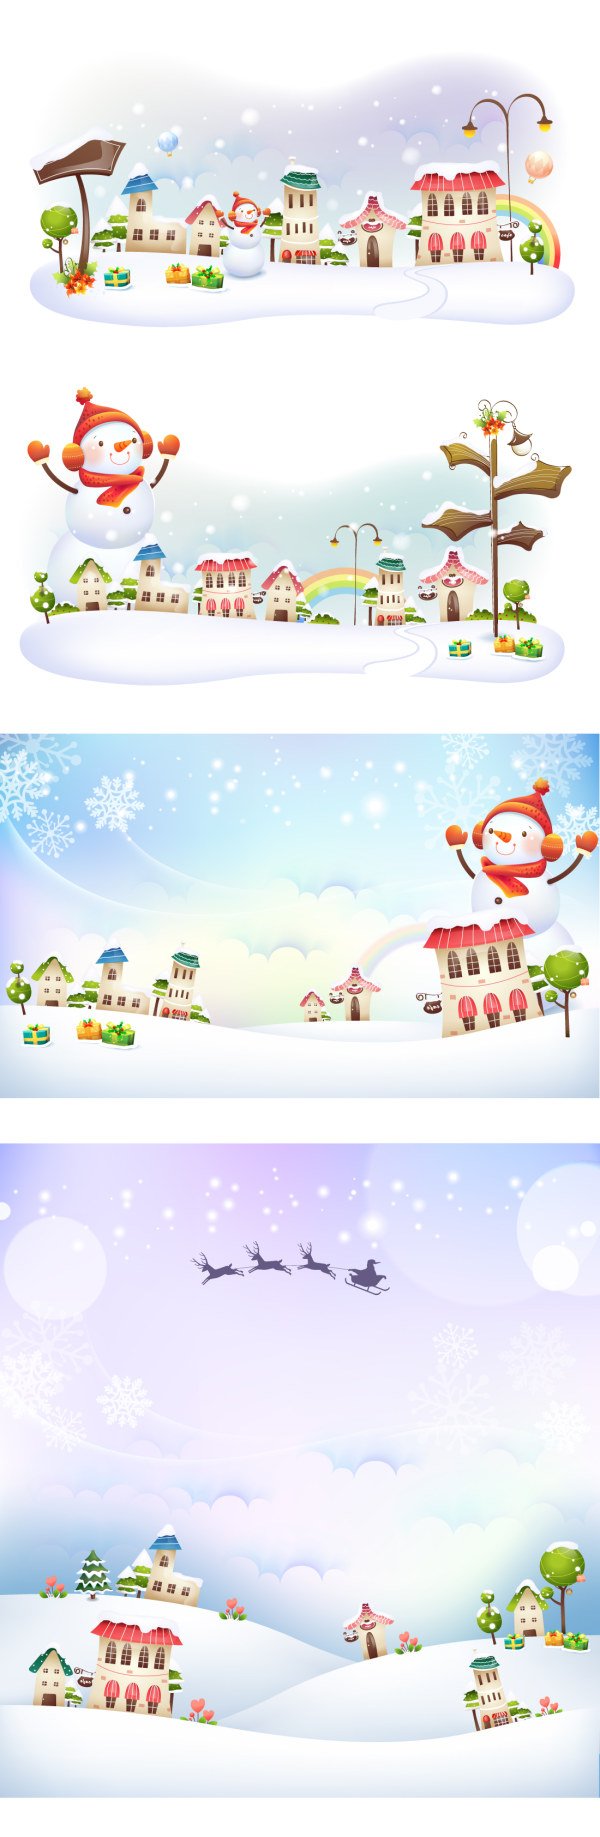 Natal salju dunia ilustrasi materi